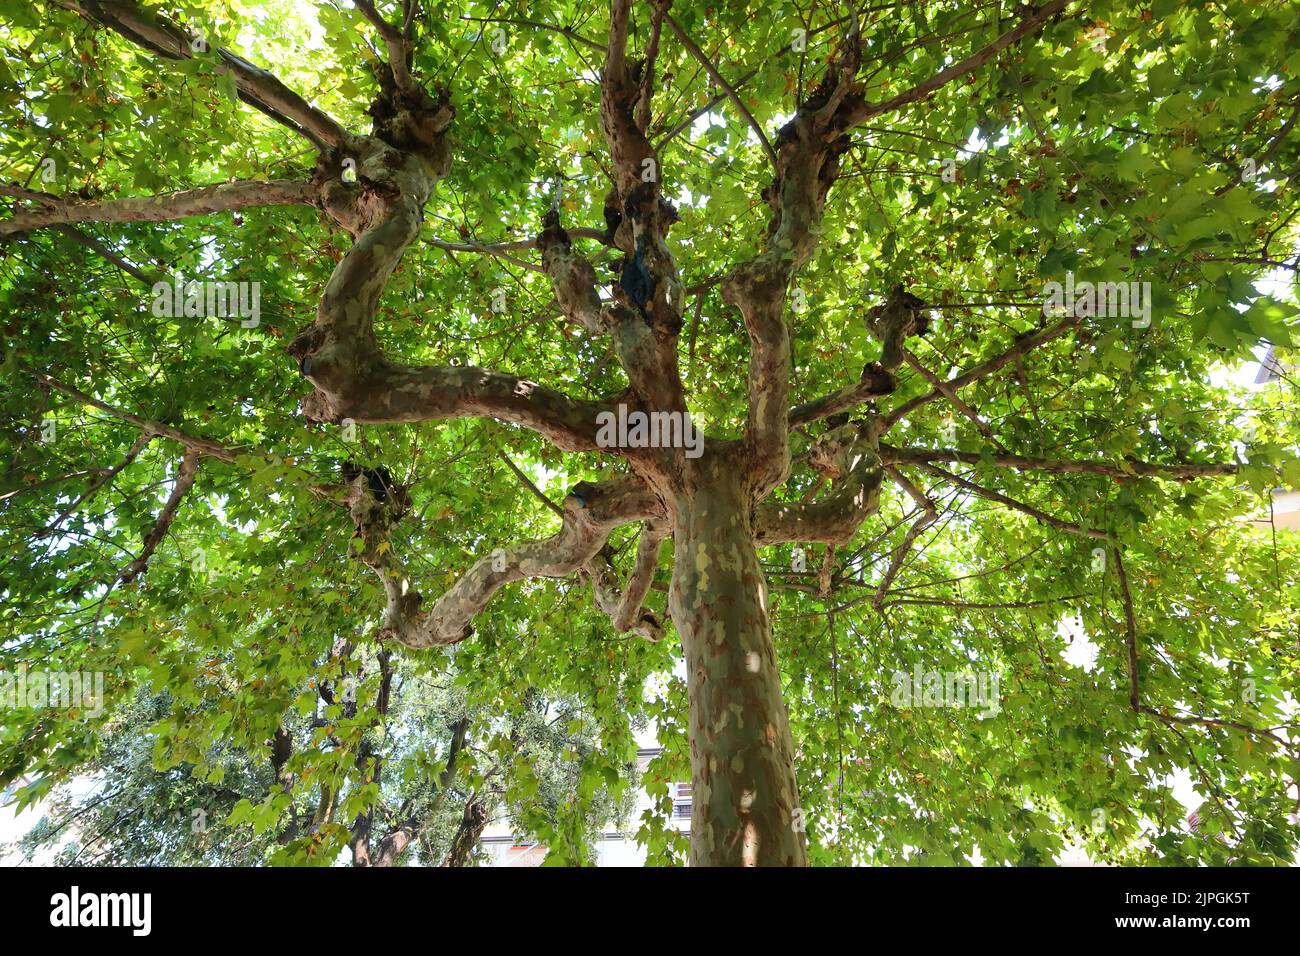 Gros plan d'un arbre de plan oriental. Montecatini terme, Toscane, Italie. Banque D'Images